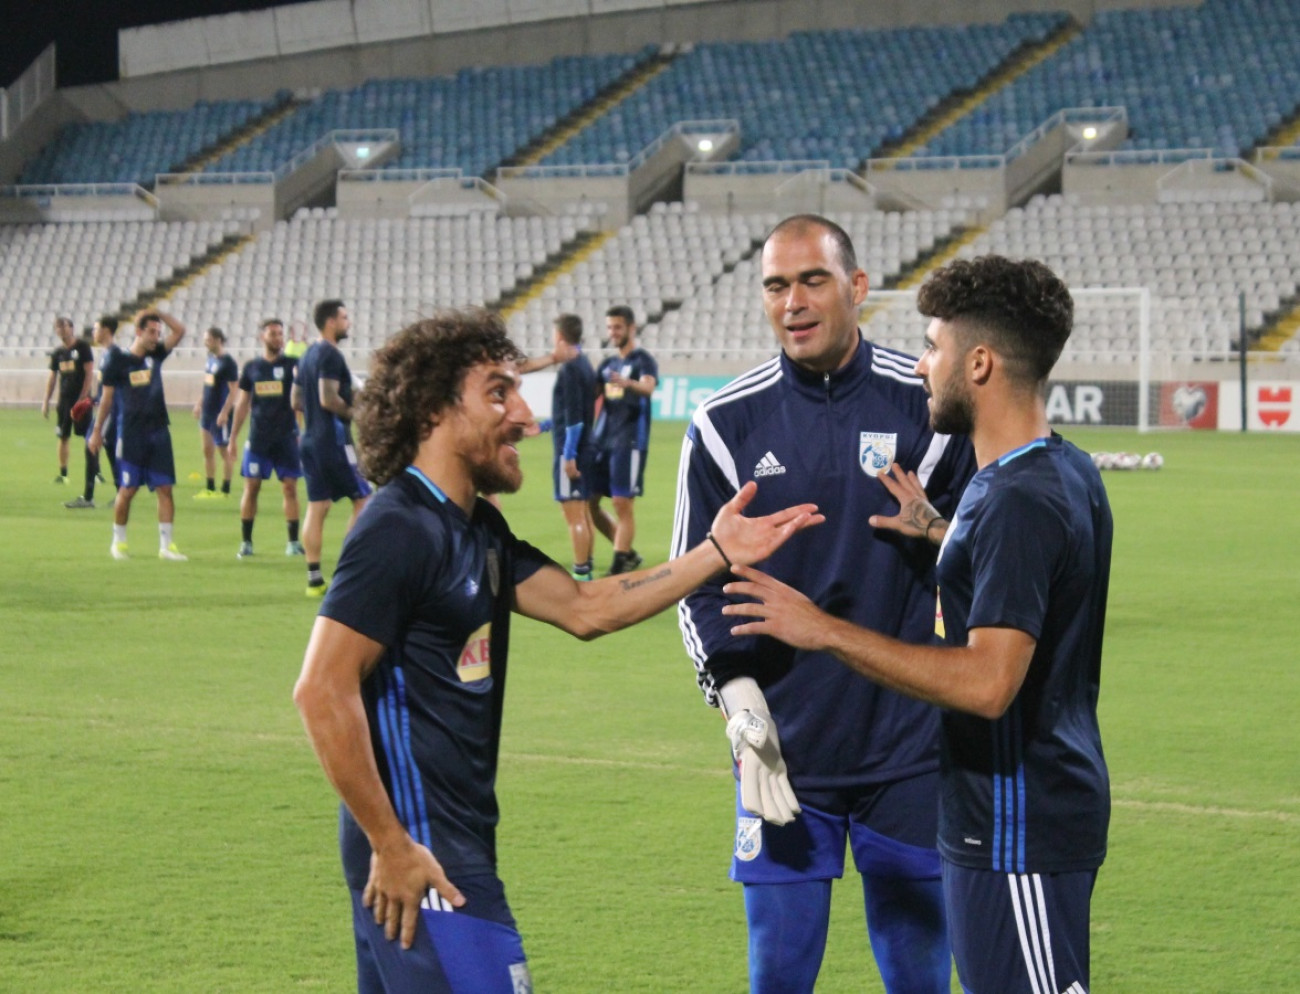 Αλλάζουν τα συμβόλαια των ποδοσφαιριστών στην Κύπρο – ΕΓΓΡΑΦΟ